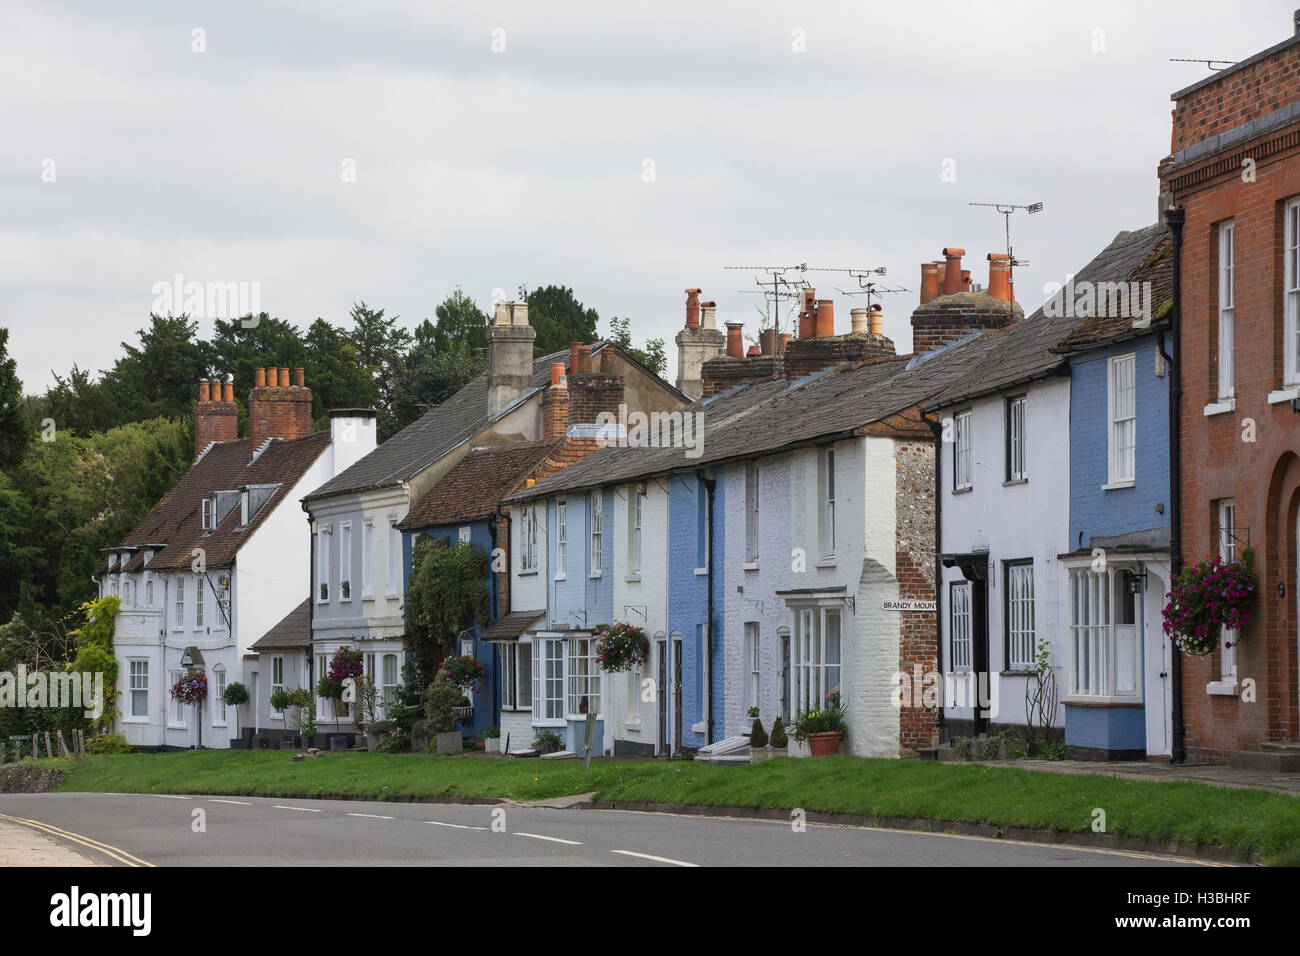 Bild Postkarte Stadt von New Alresford in Hampshire. Hauptstraße mit Reihe von terrassenförmig angelegten Bungalows. Stockfoto